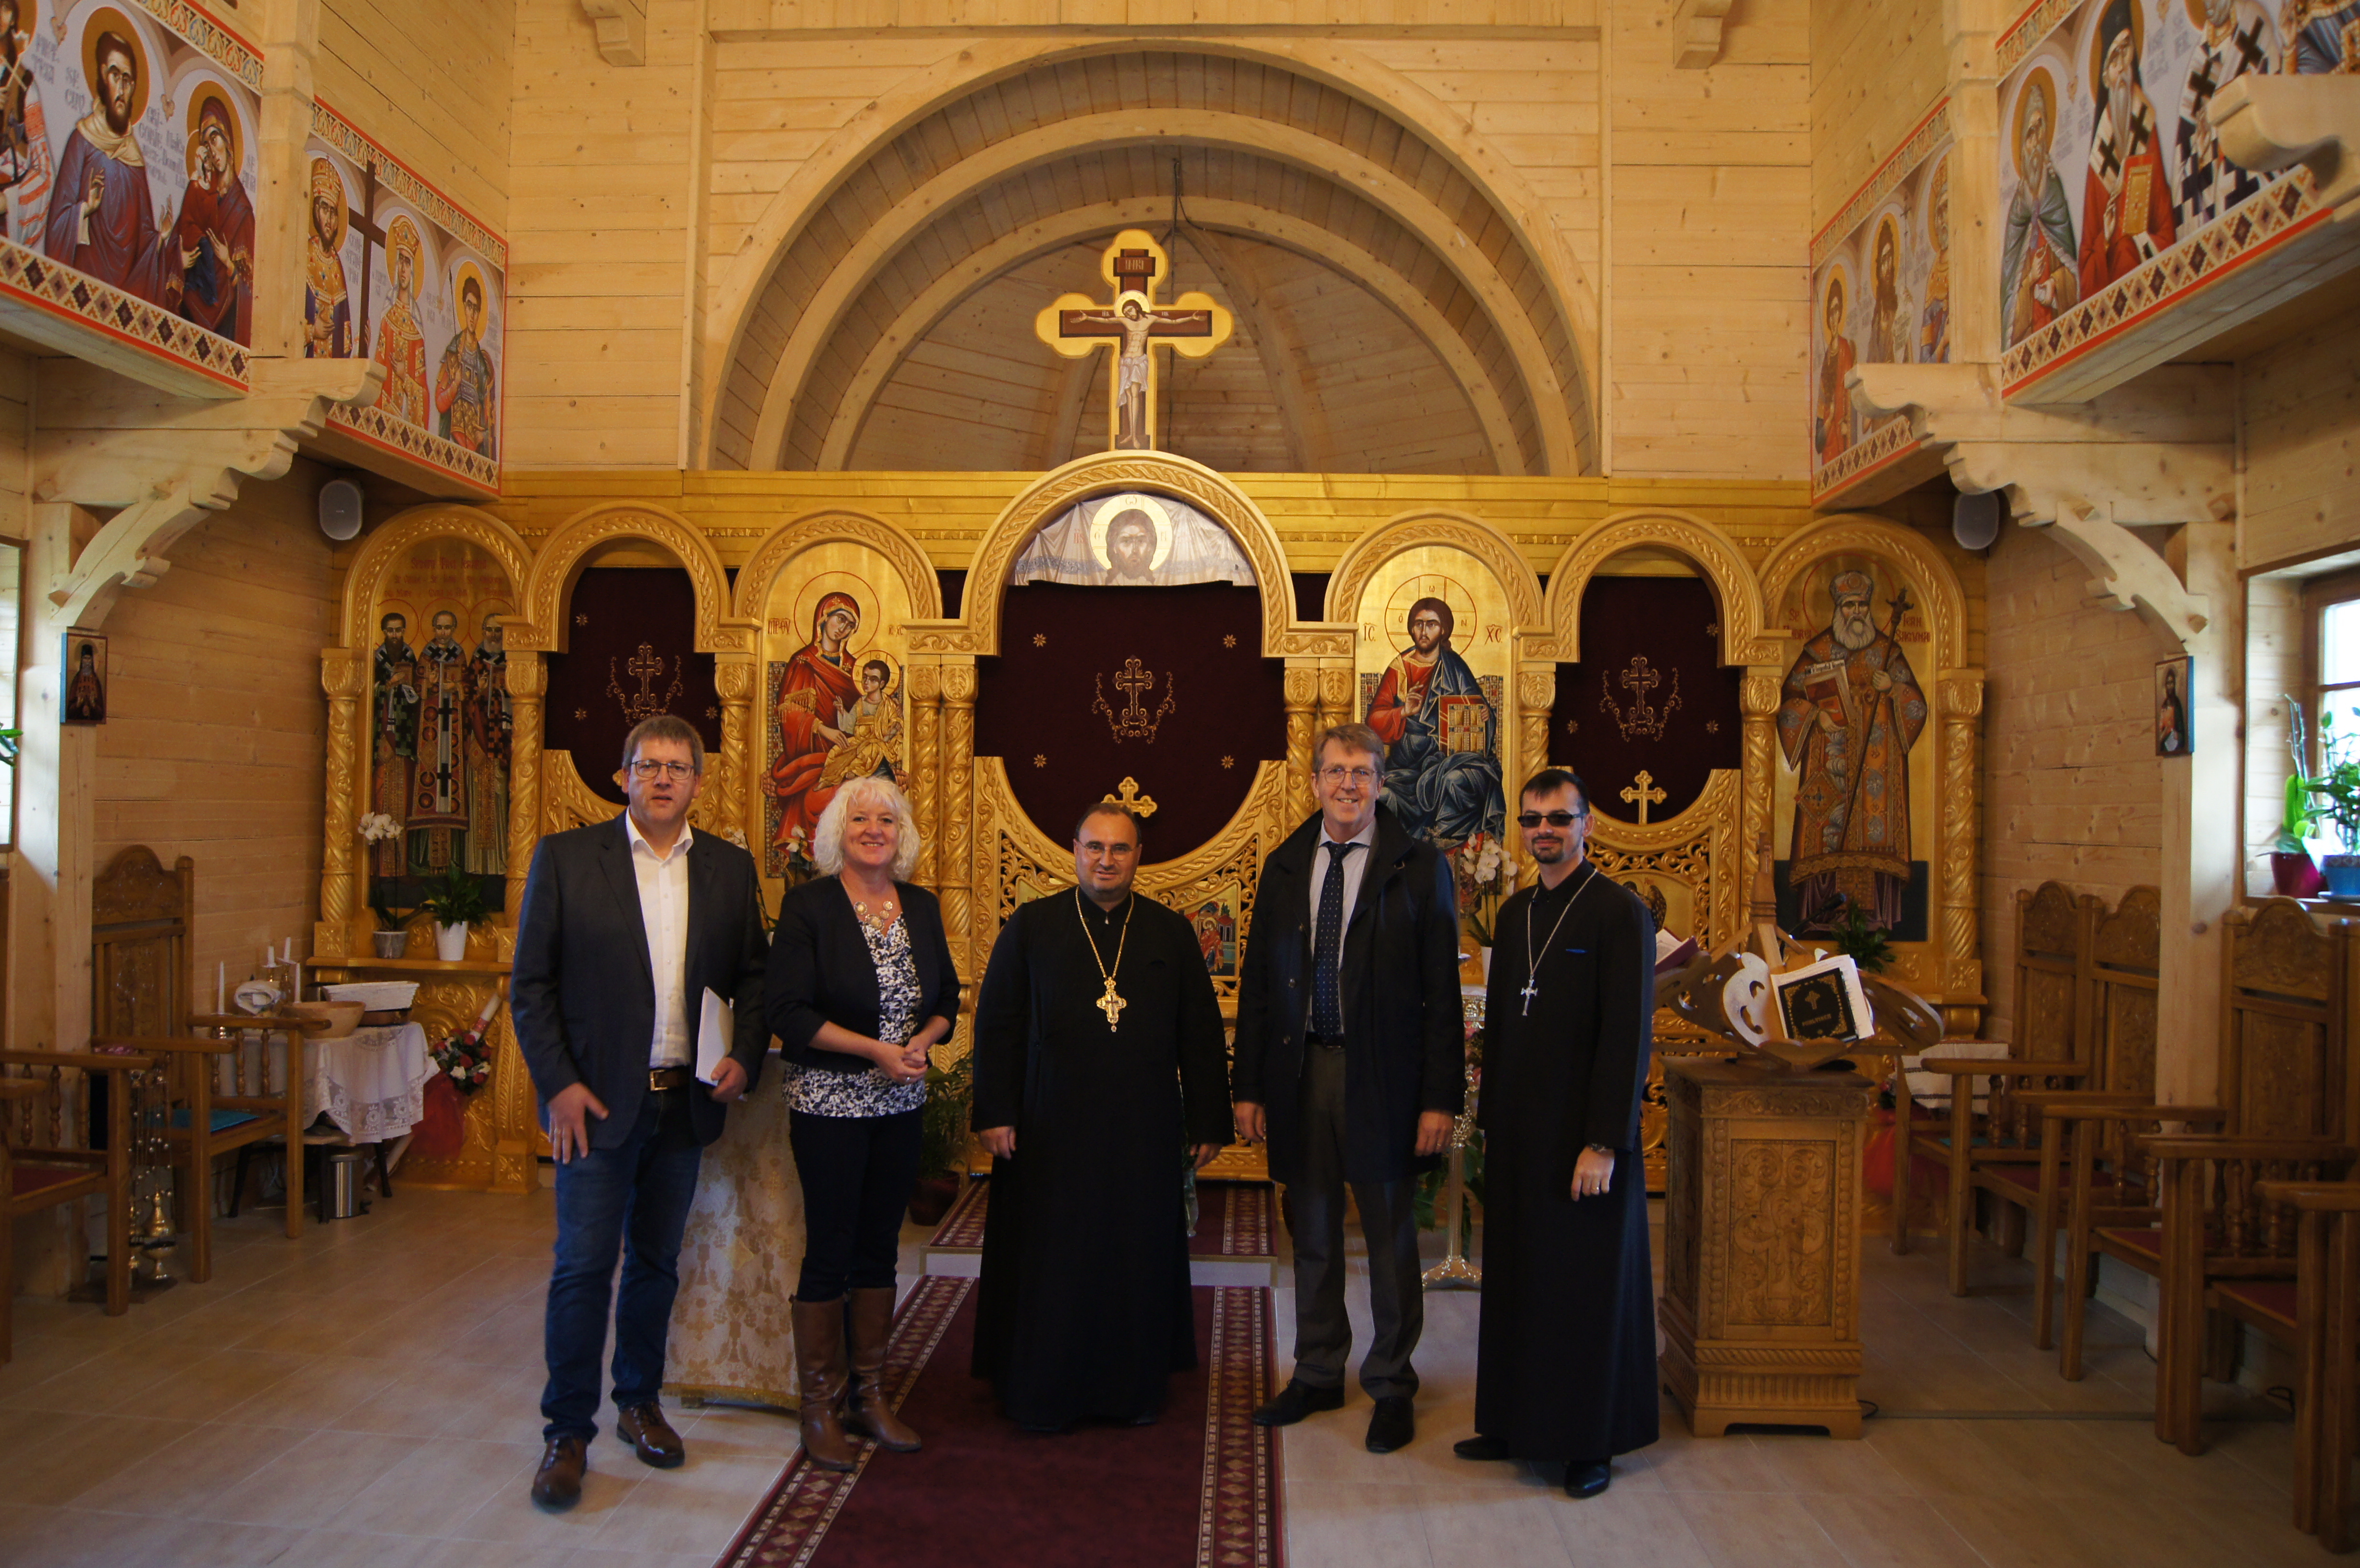 Rumänisch orthodoxe kirche bielefeld